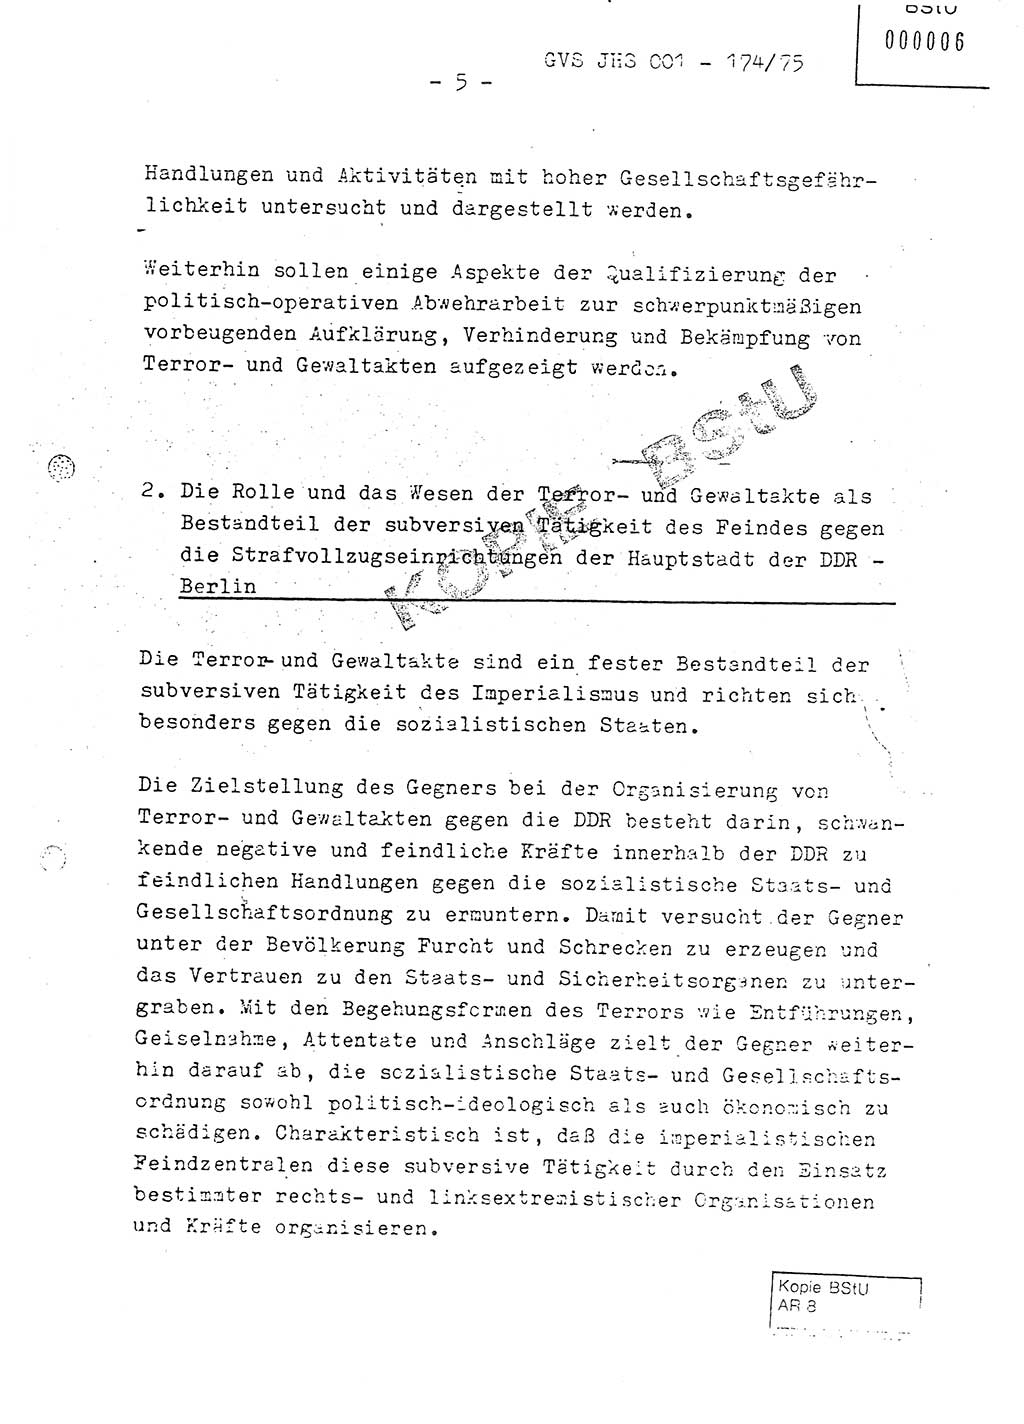 Fachschulabschlußarbeit Oberleutnant Adolf Cichon (Abt. Ⅶ), Ministerium für Staatssicherheit (MfS) [Deutsche Demokratische Republik (DDR)], Juristische Hochschule (JHS), Geheime Verschlußsache (GVS) 001-174/75, Potsdam 1976, Seite 5 (FS-Abschl.-Arb. MfS DDR JHS GVS 001-174/75 1976, S. 5)